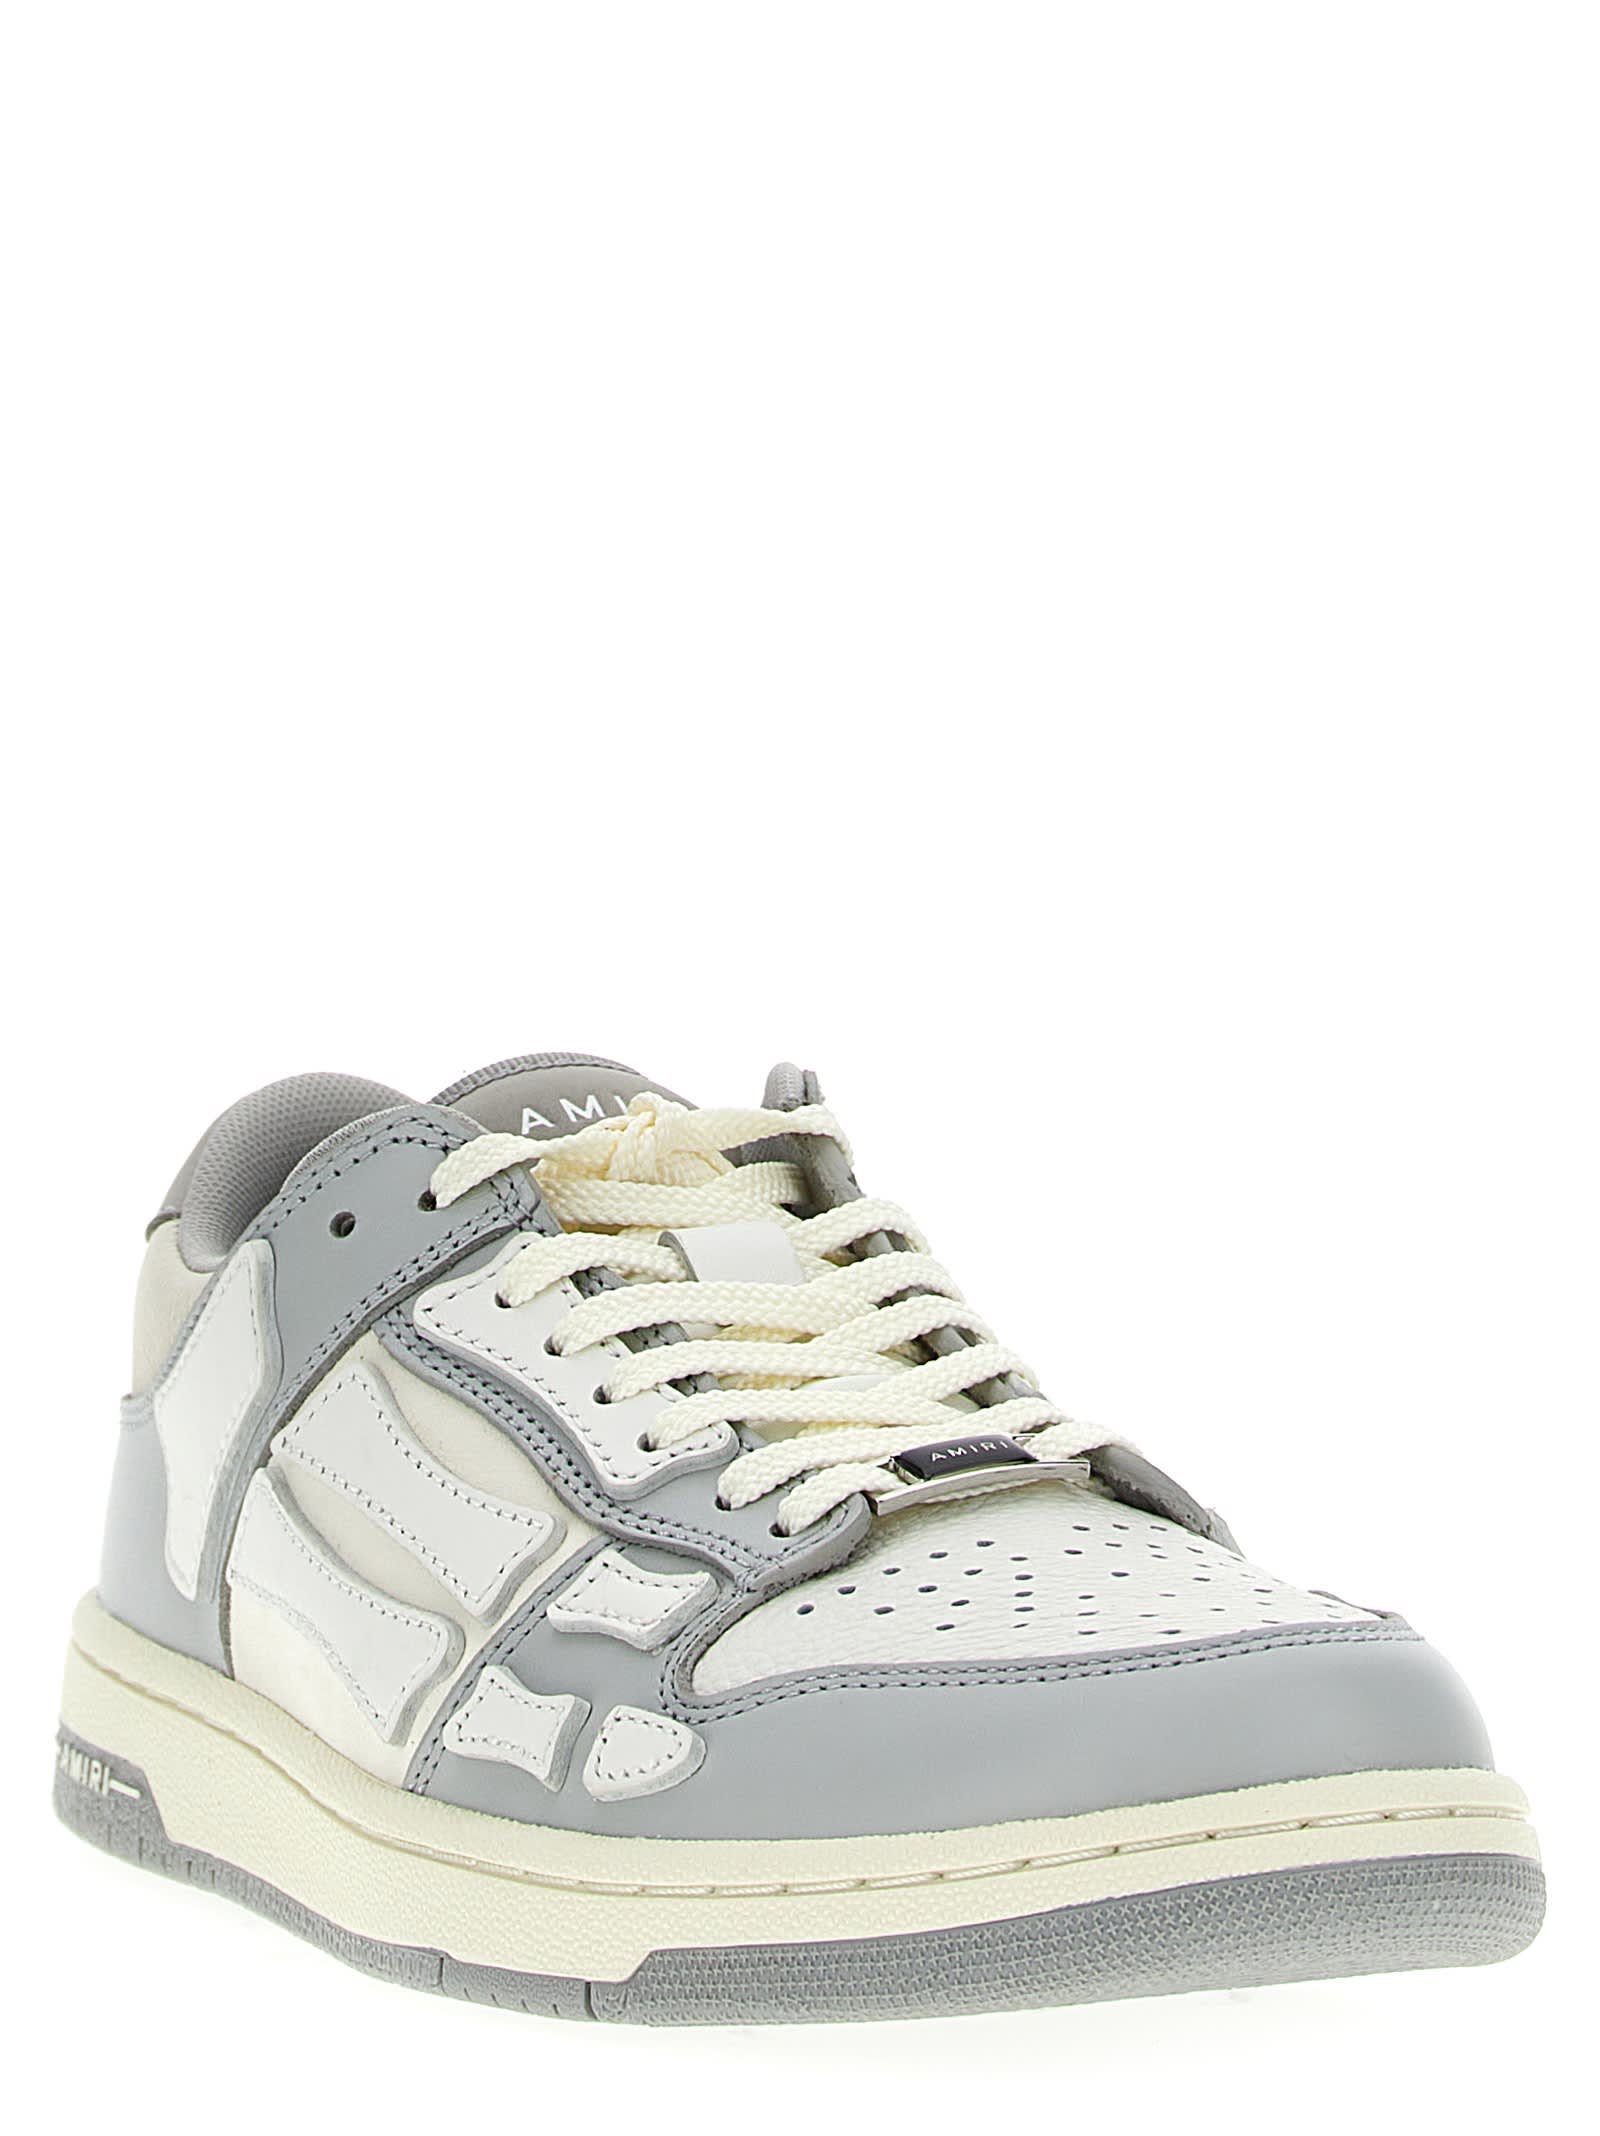 Shop Amiri Skel Top Low Sneakers In Grey/white